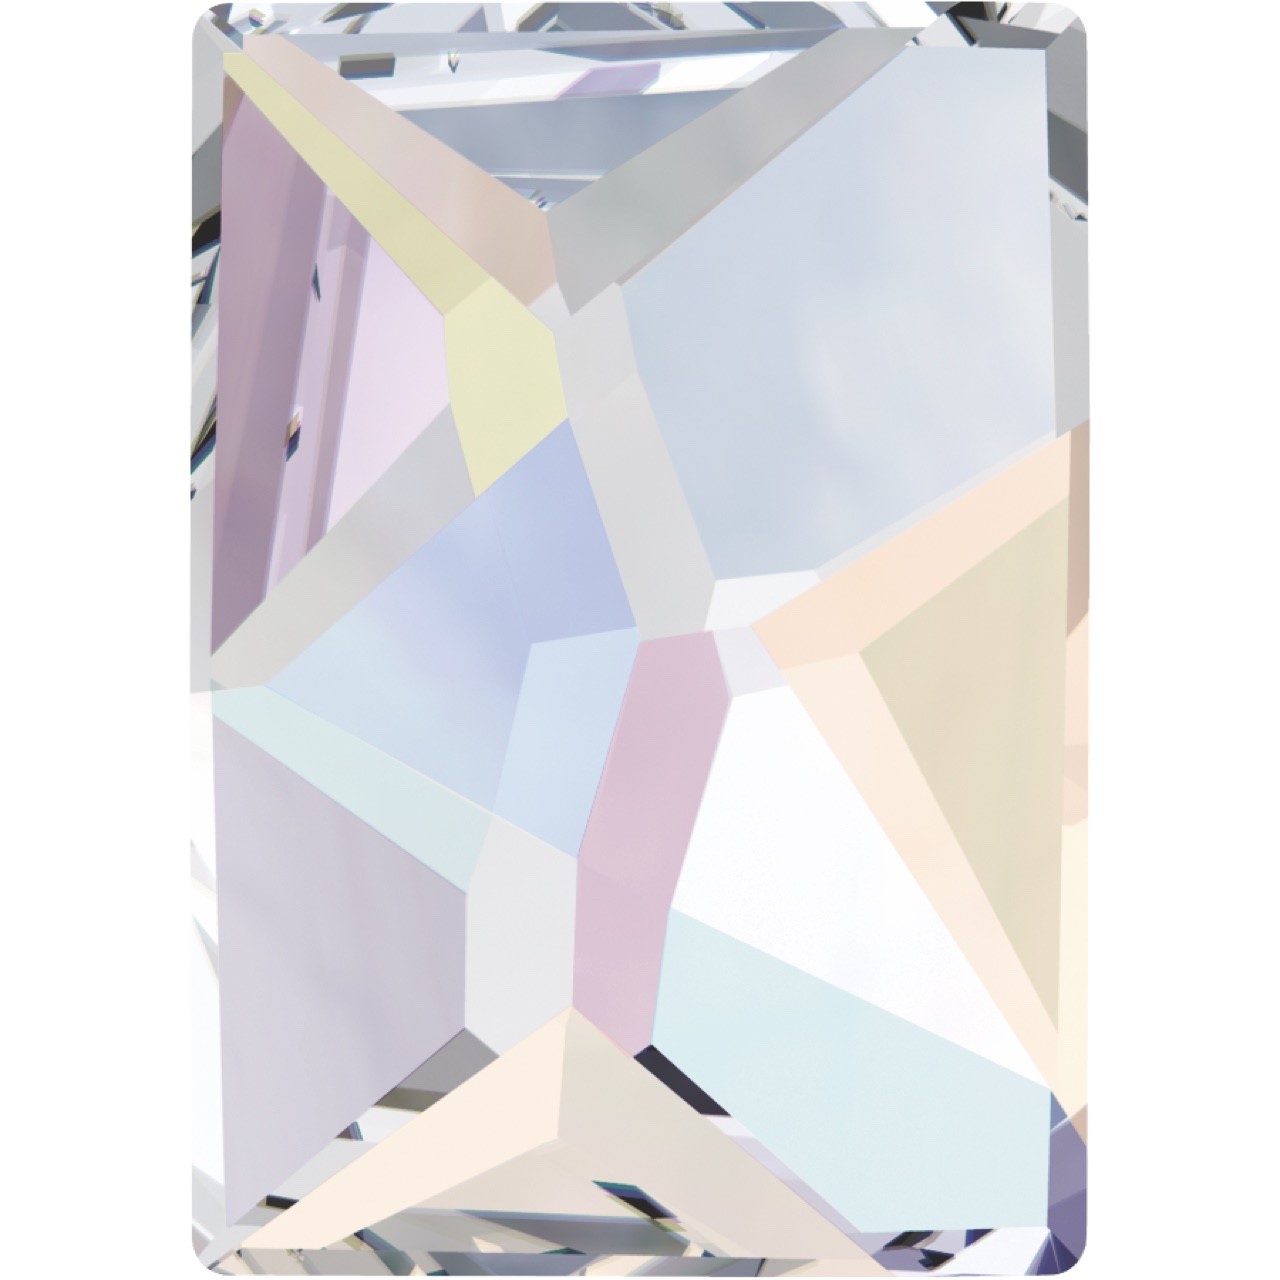 Rhinestone - Crystal AB Cosmic